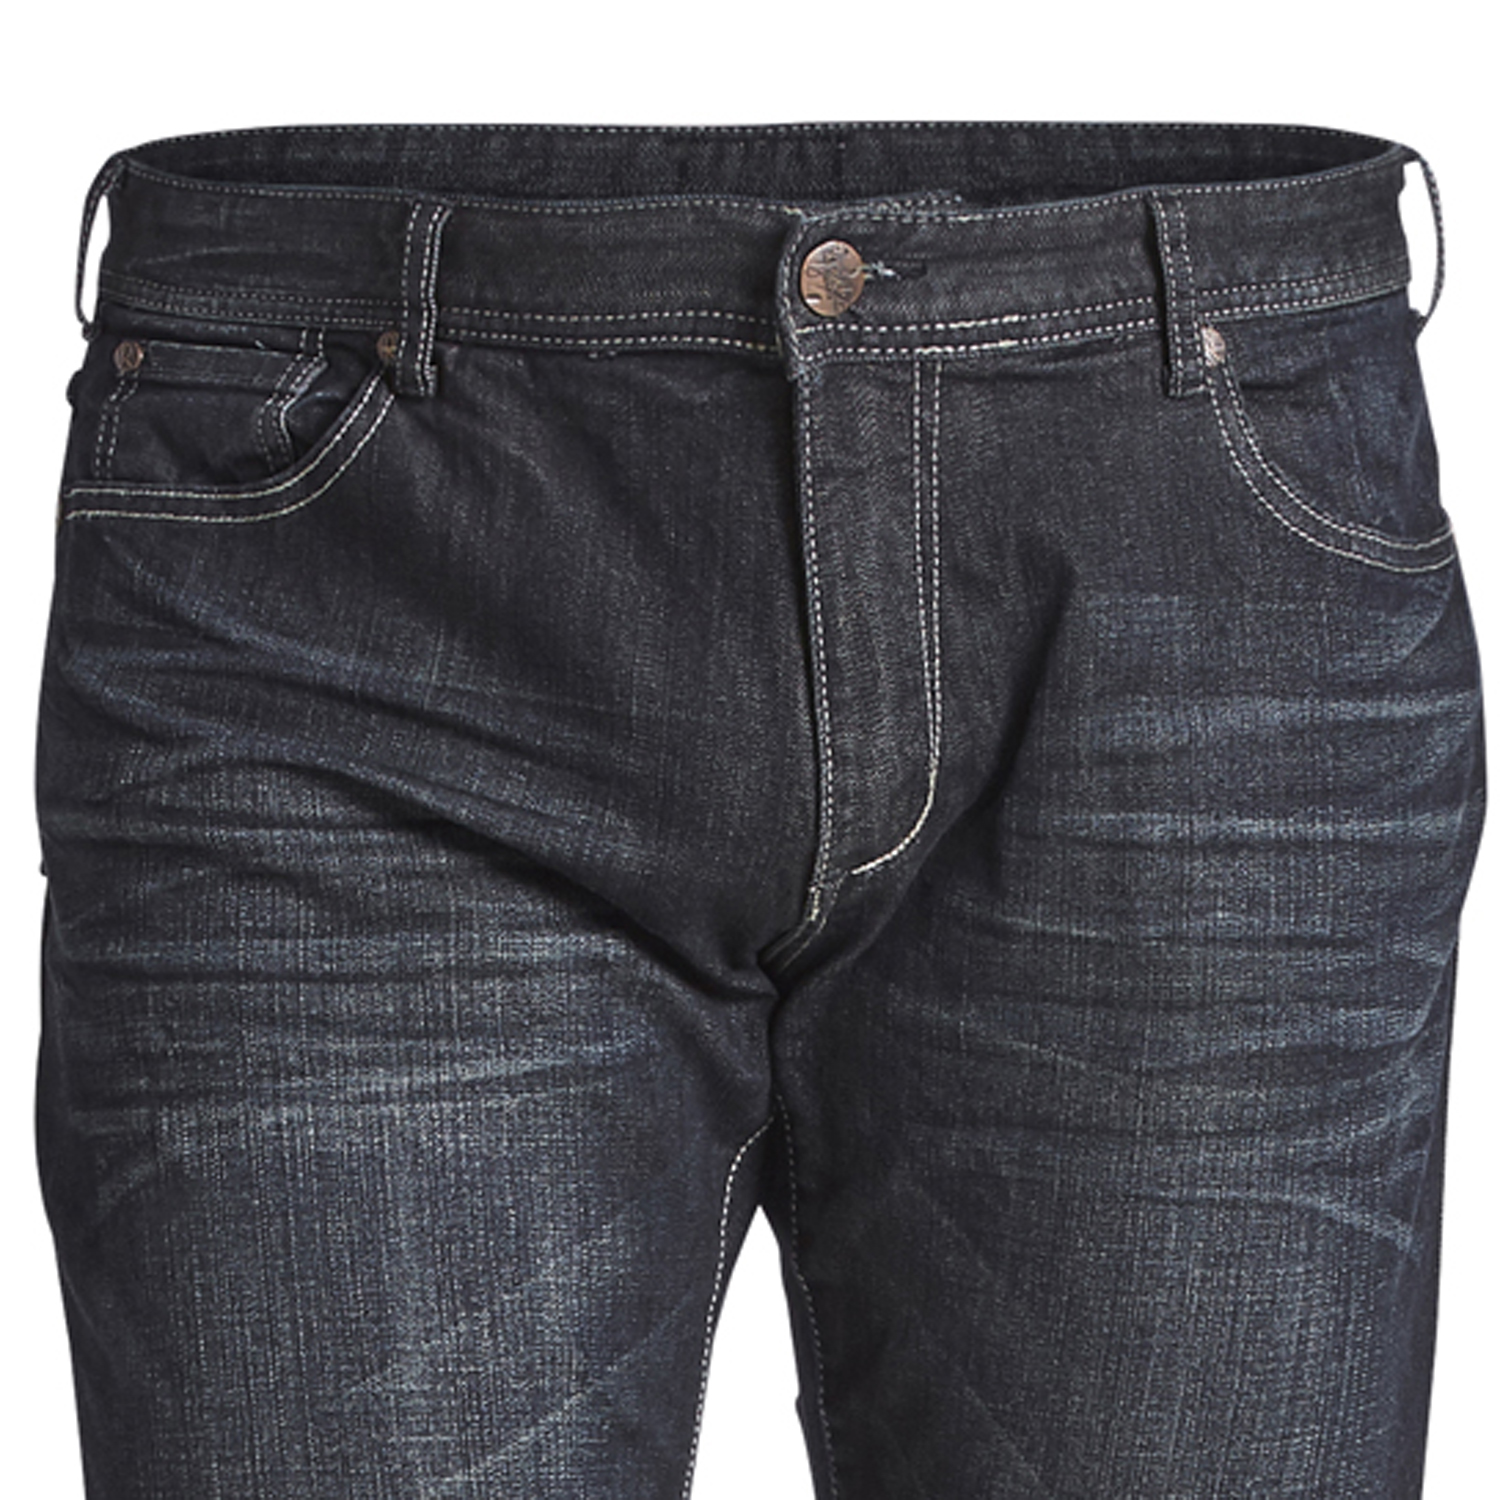 Übergrößen Herren Jeans von Replika - Modell MICK, blue used washed